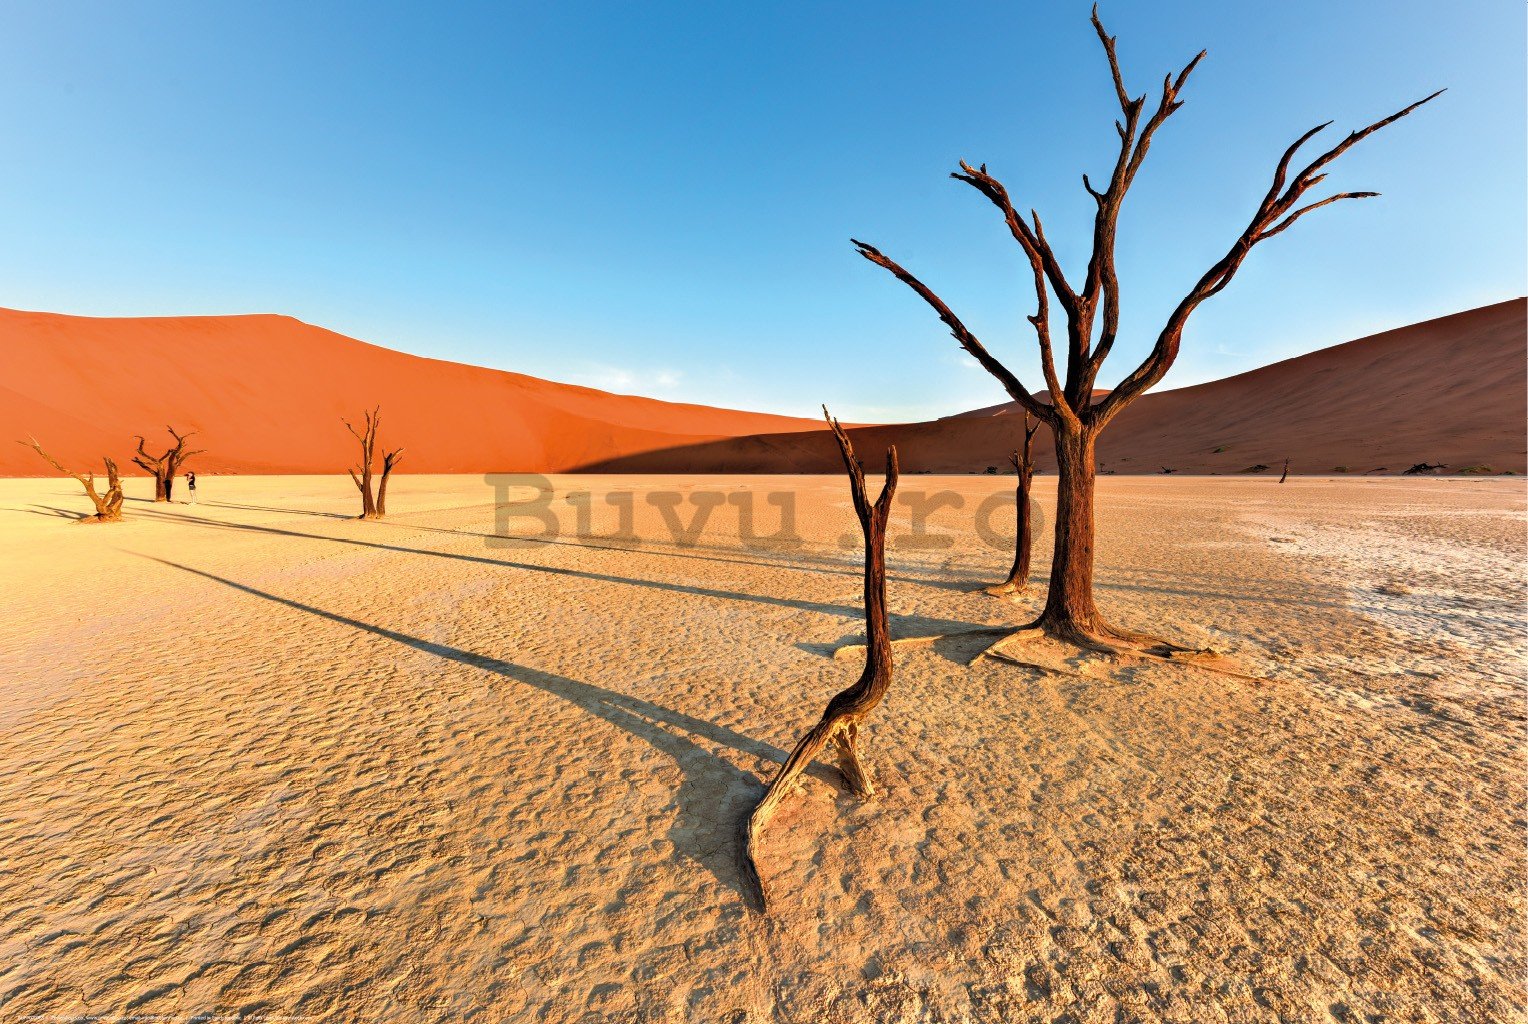 Poster: Deșertul Arid Namib